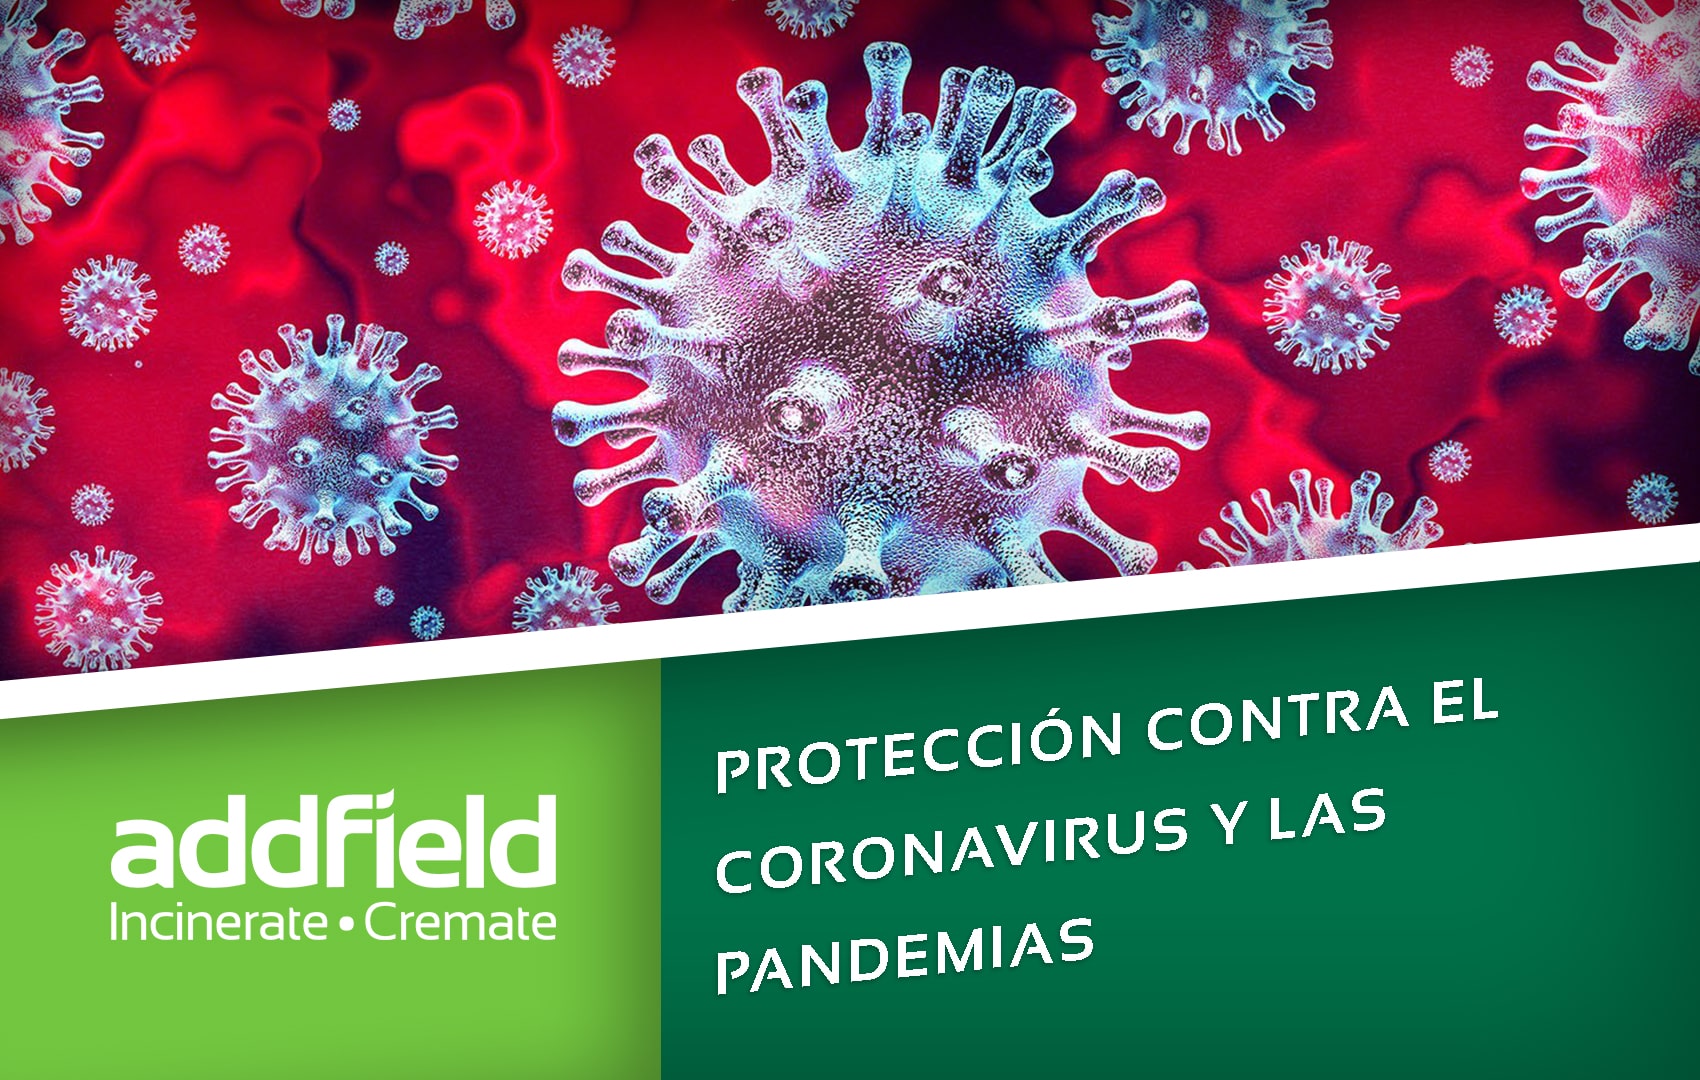 proteccion contra el coronavirus y las pandemias